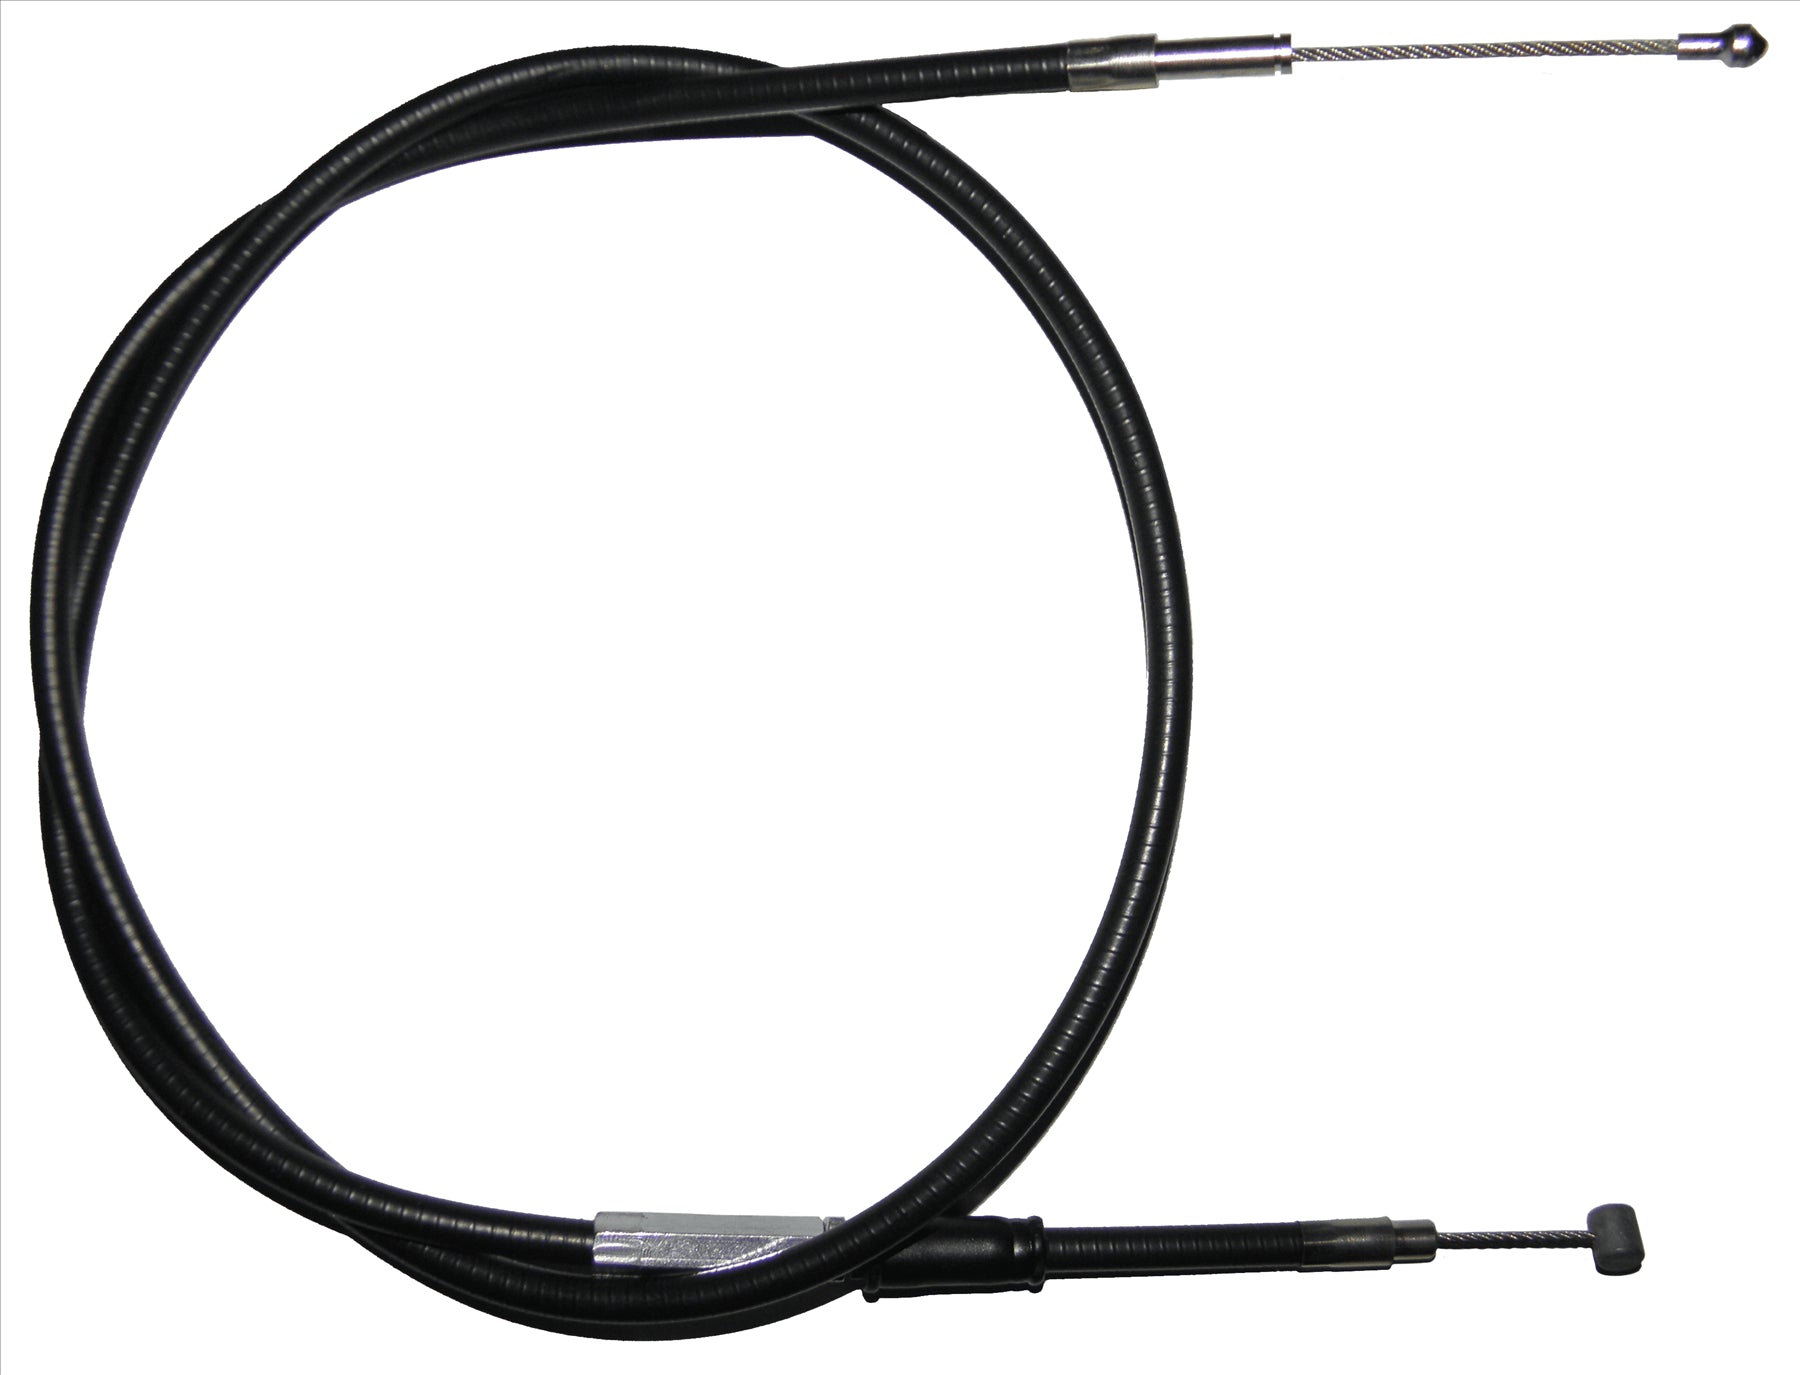 Apico Black Clutch Cable For KTM SX 600 1994